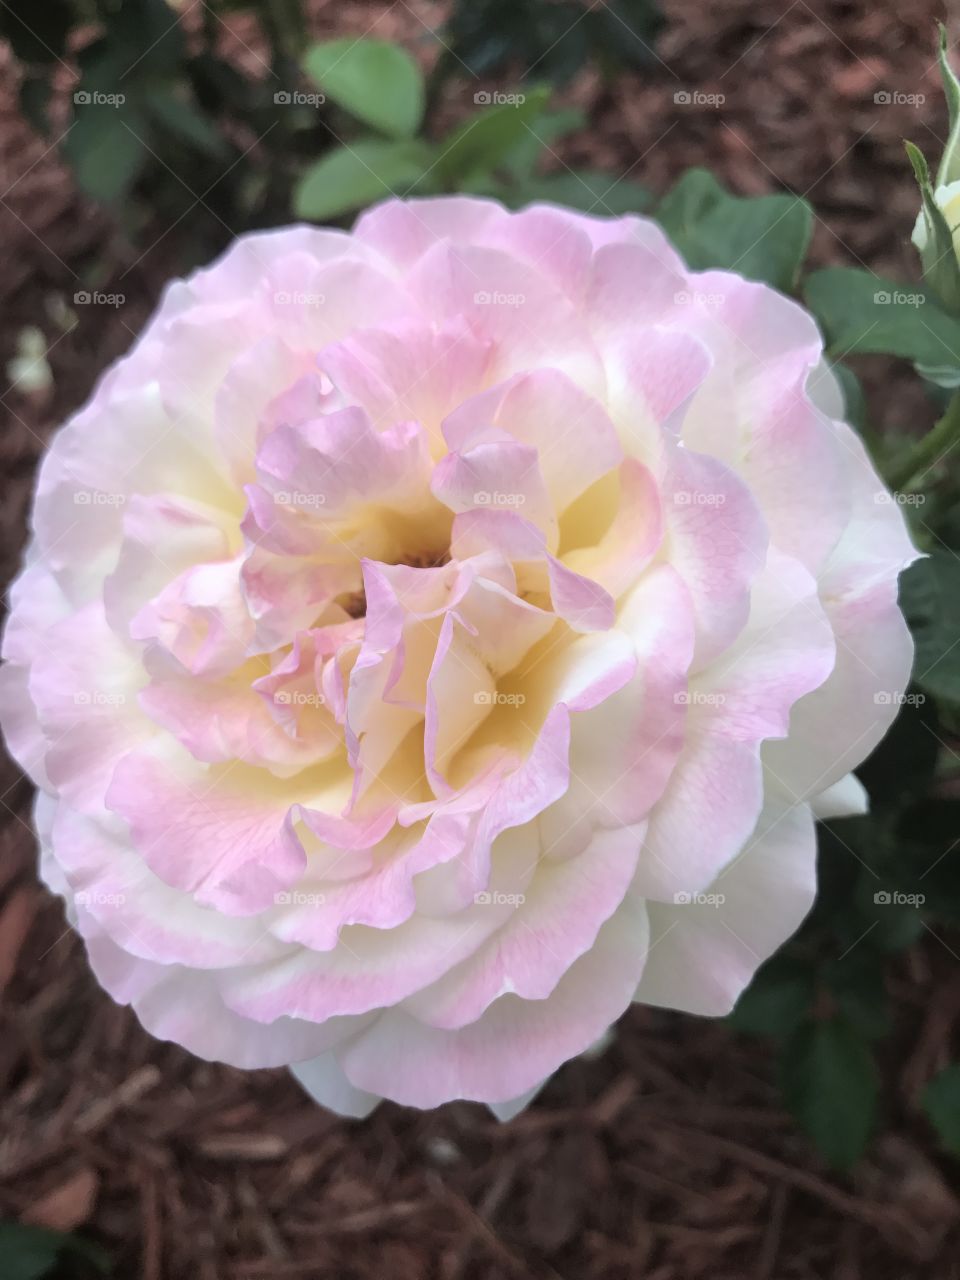 Heirloom rose